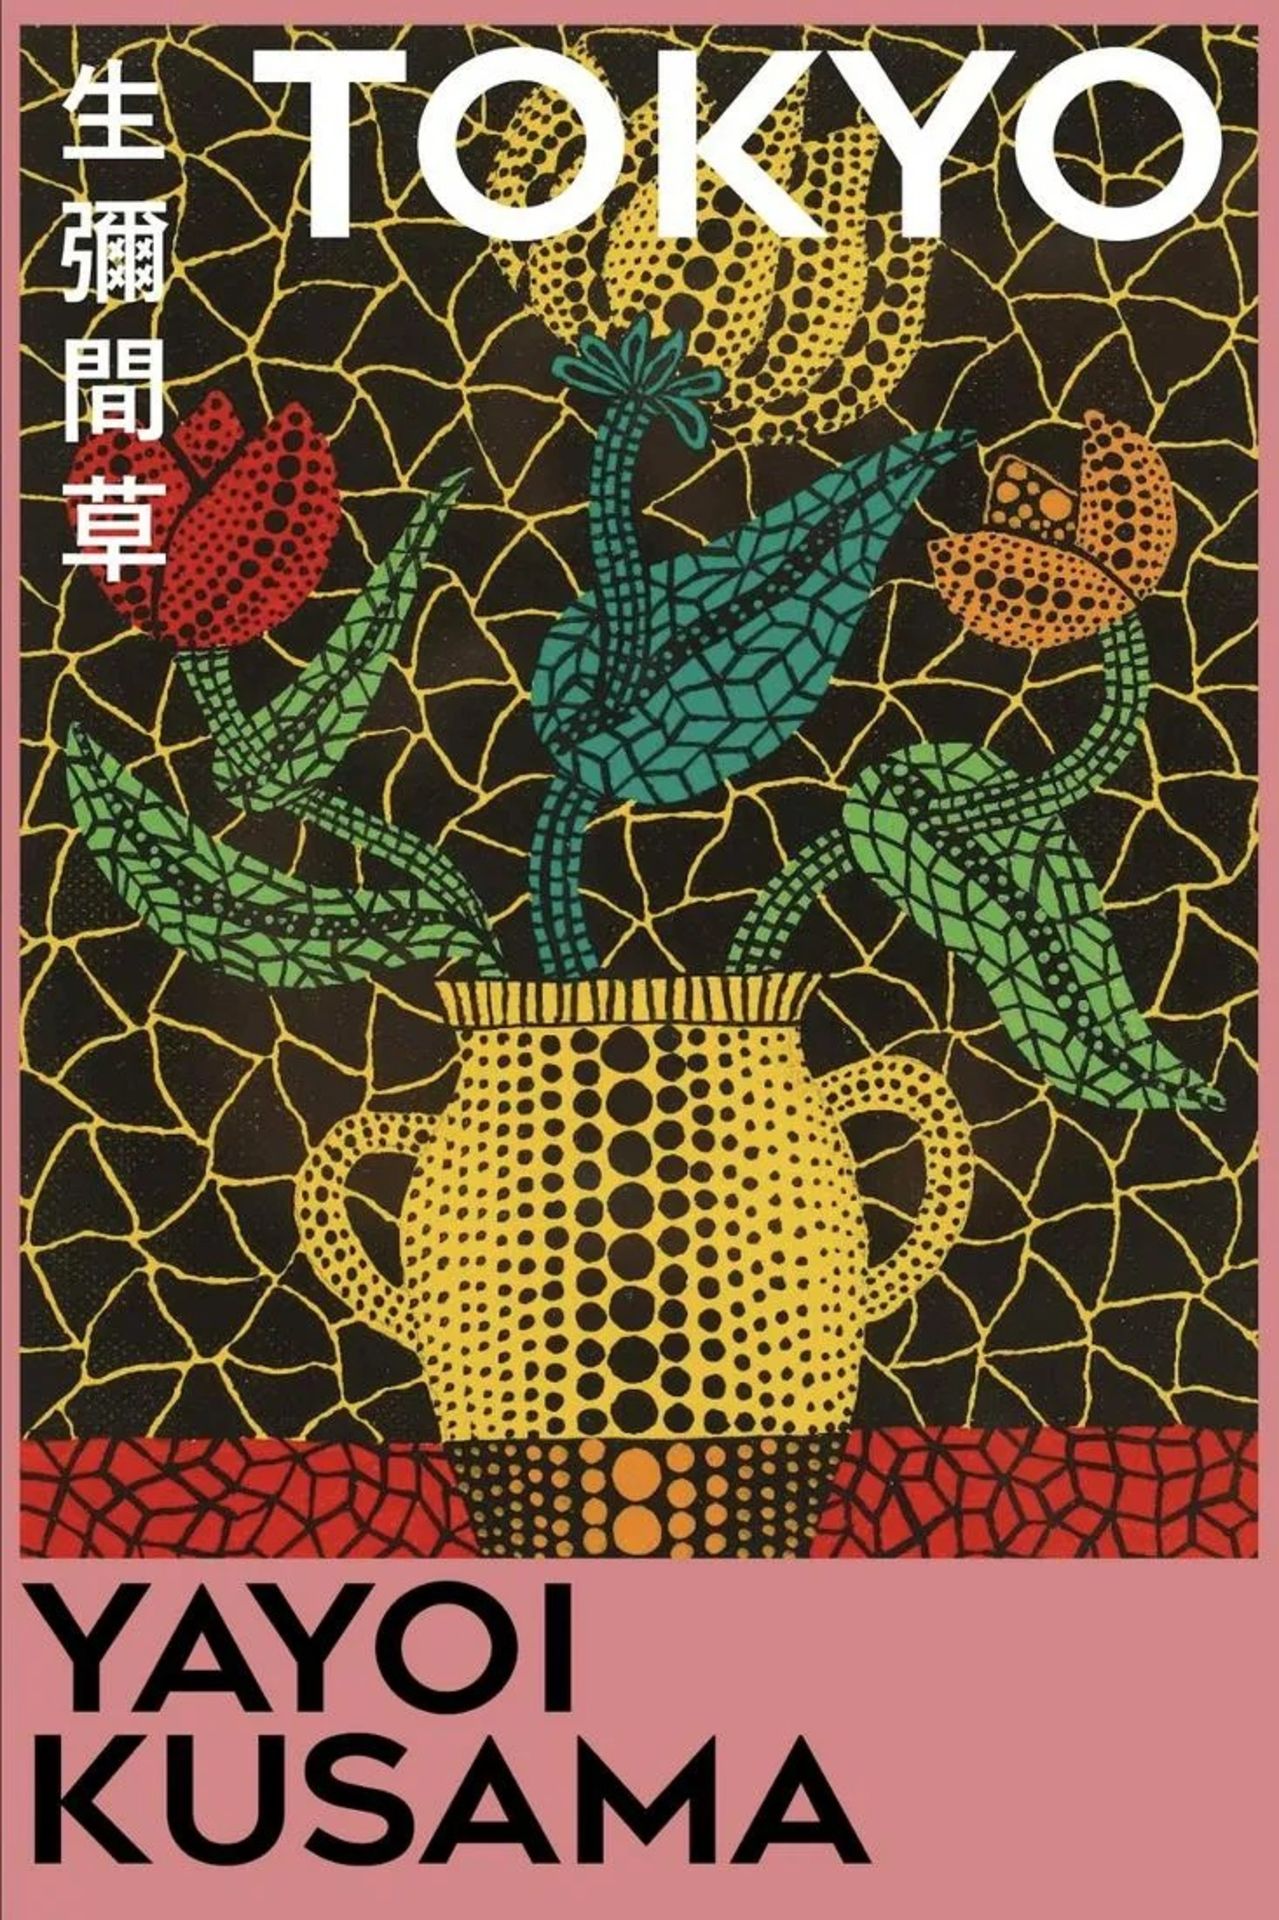 Yayoi Kusama "Tokyo" Offset Lithograph
